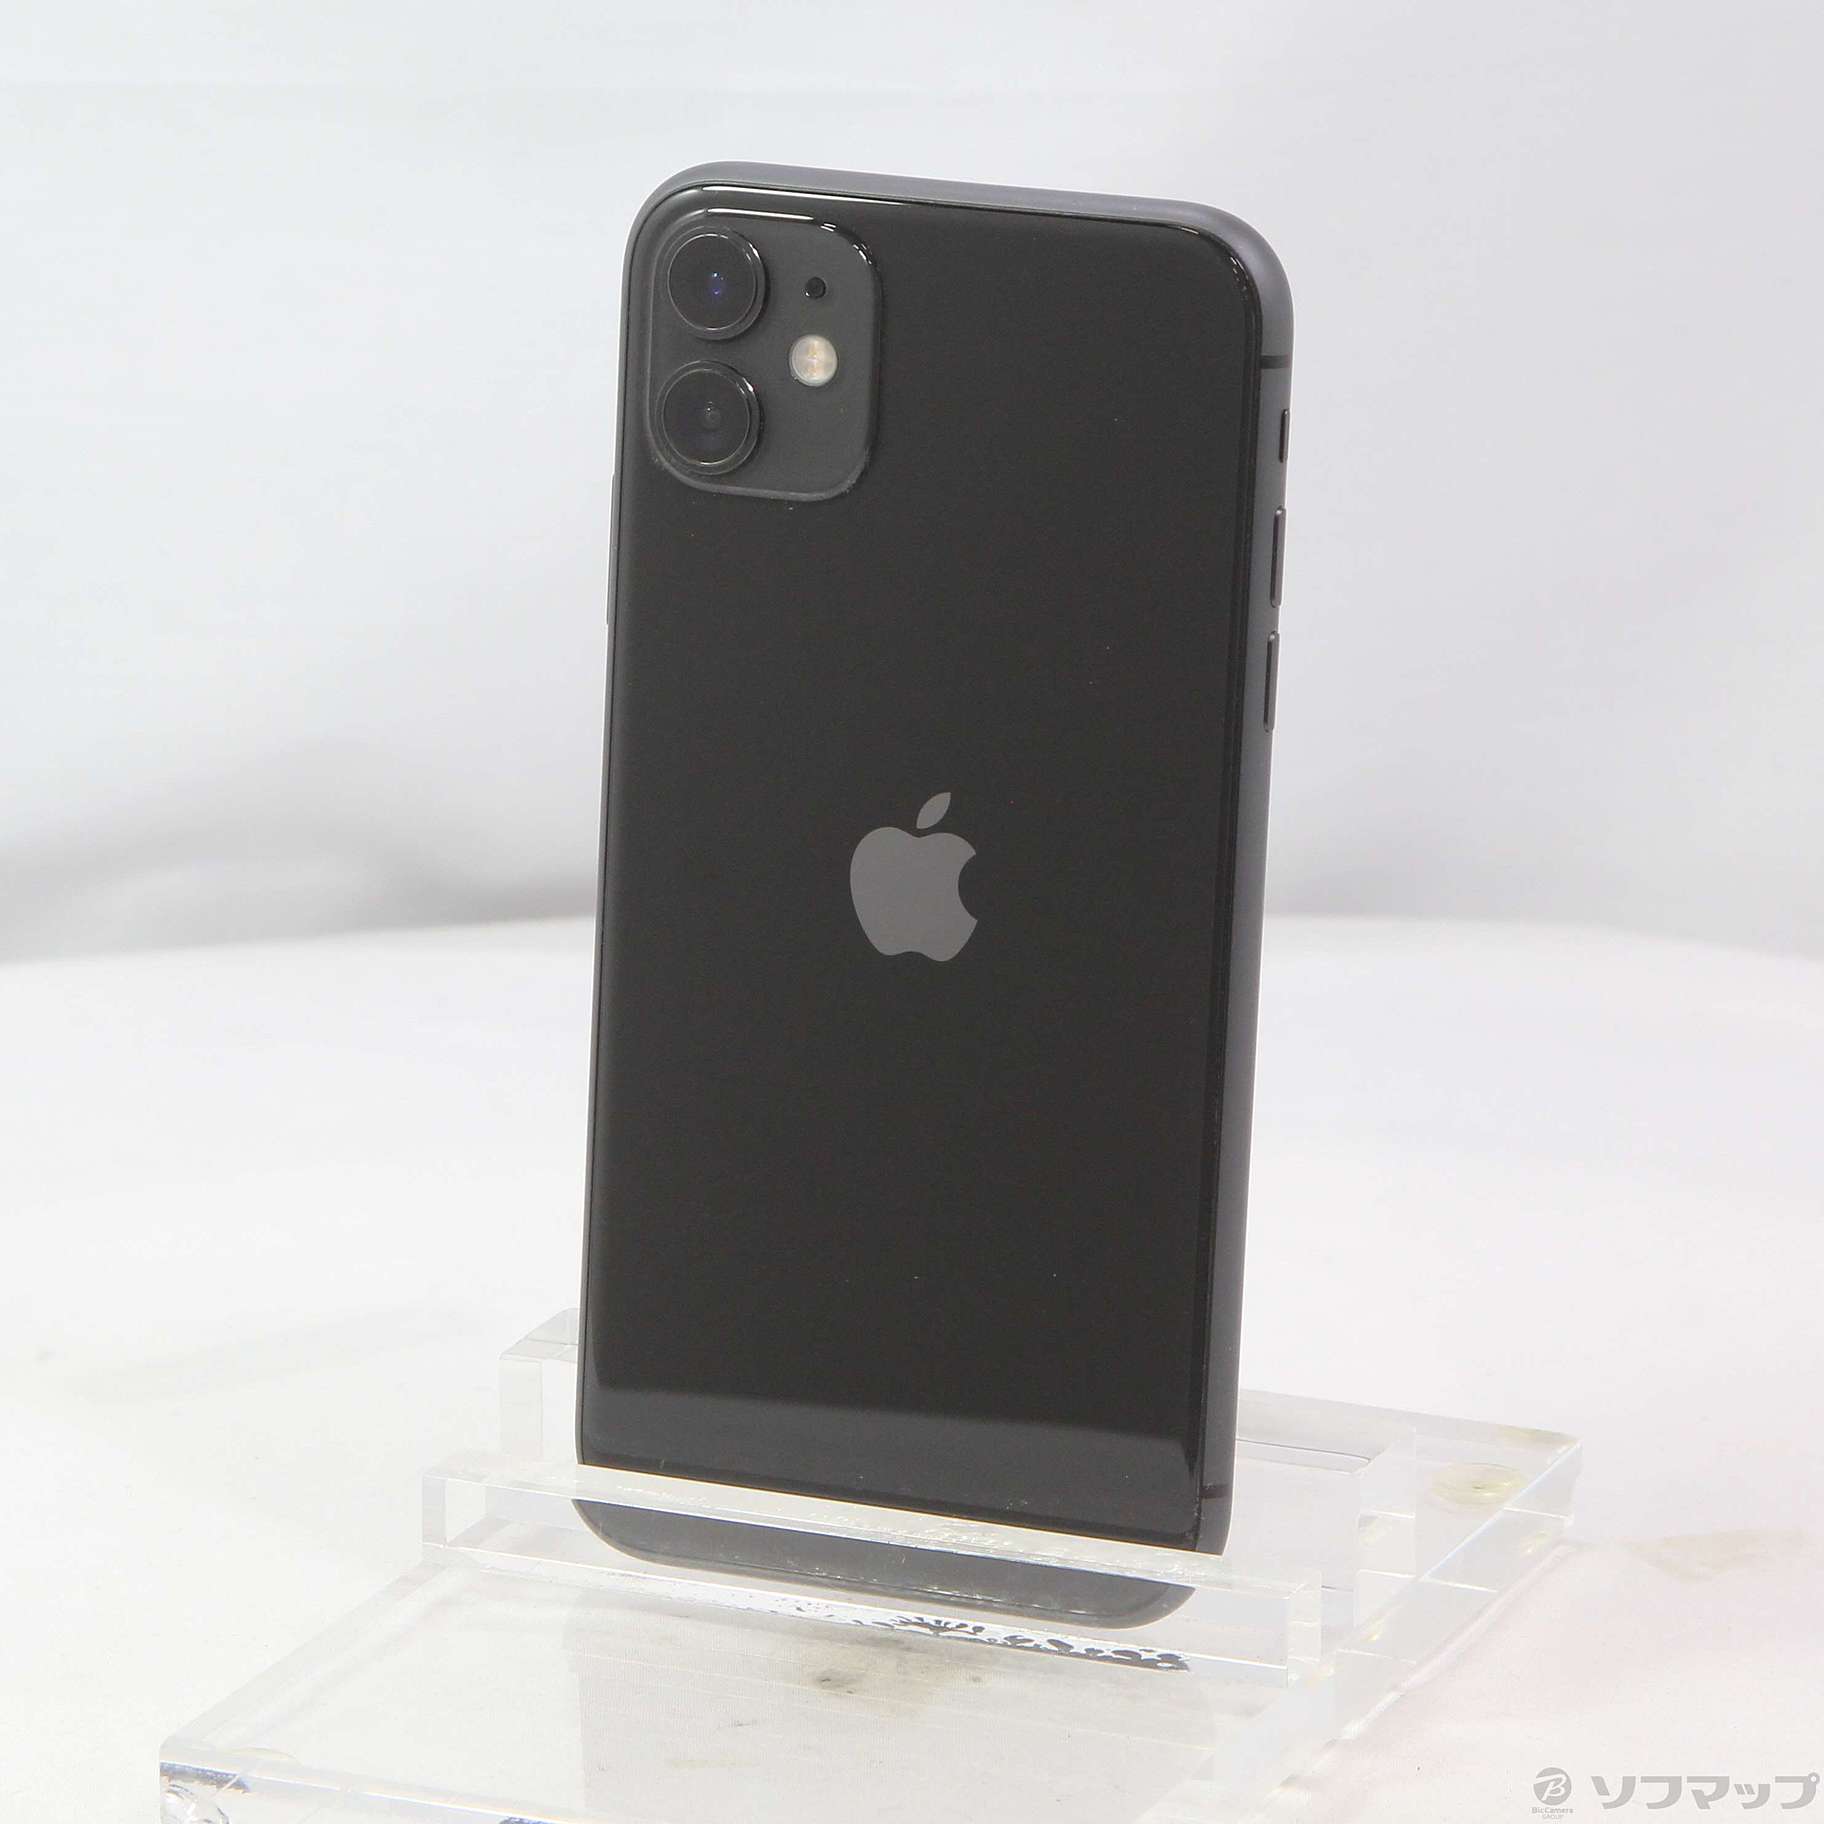 iPhone11 Black 64GB